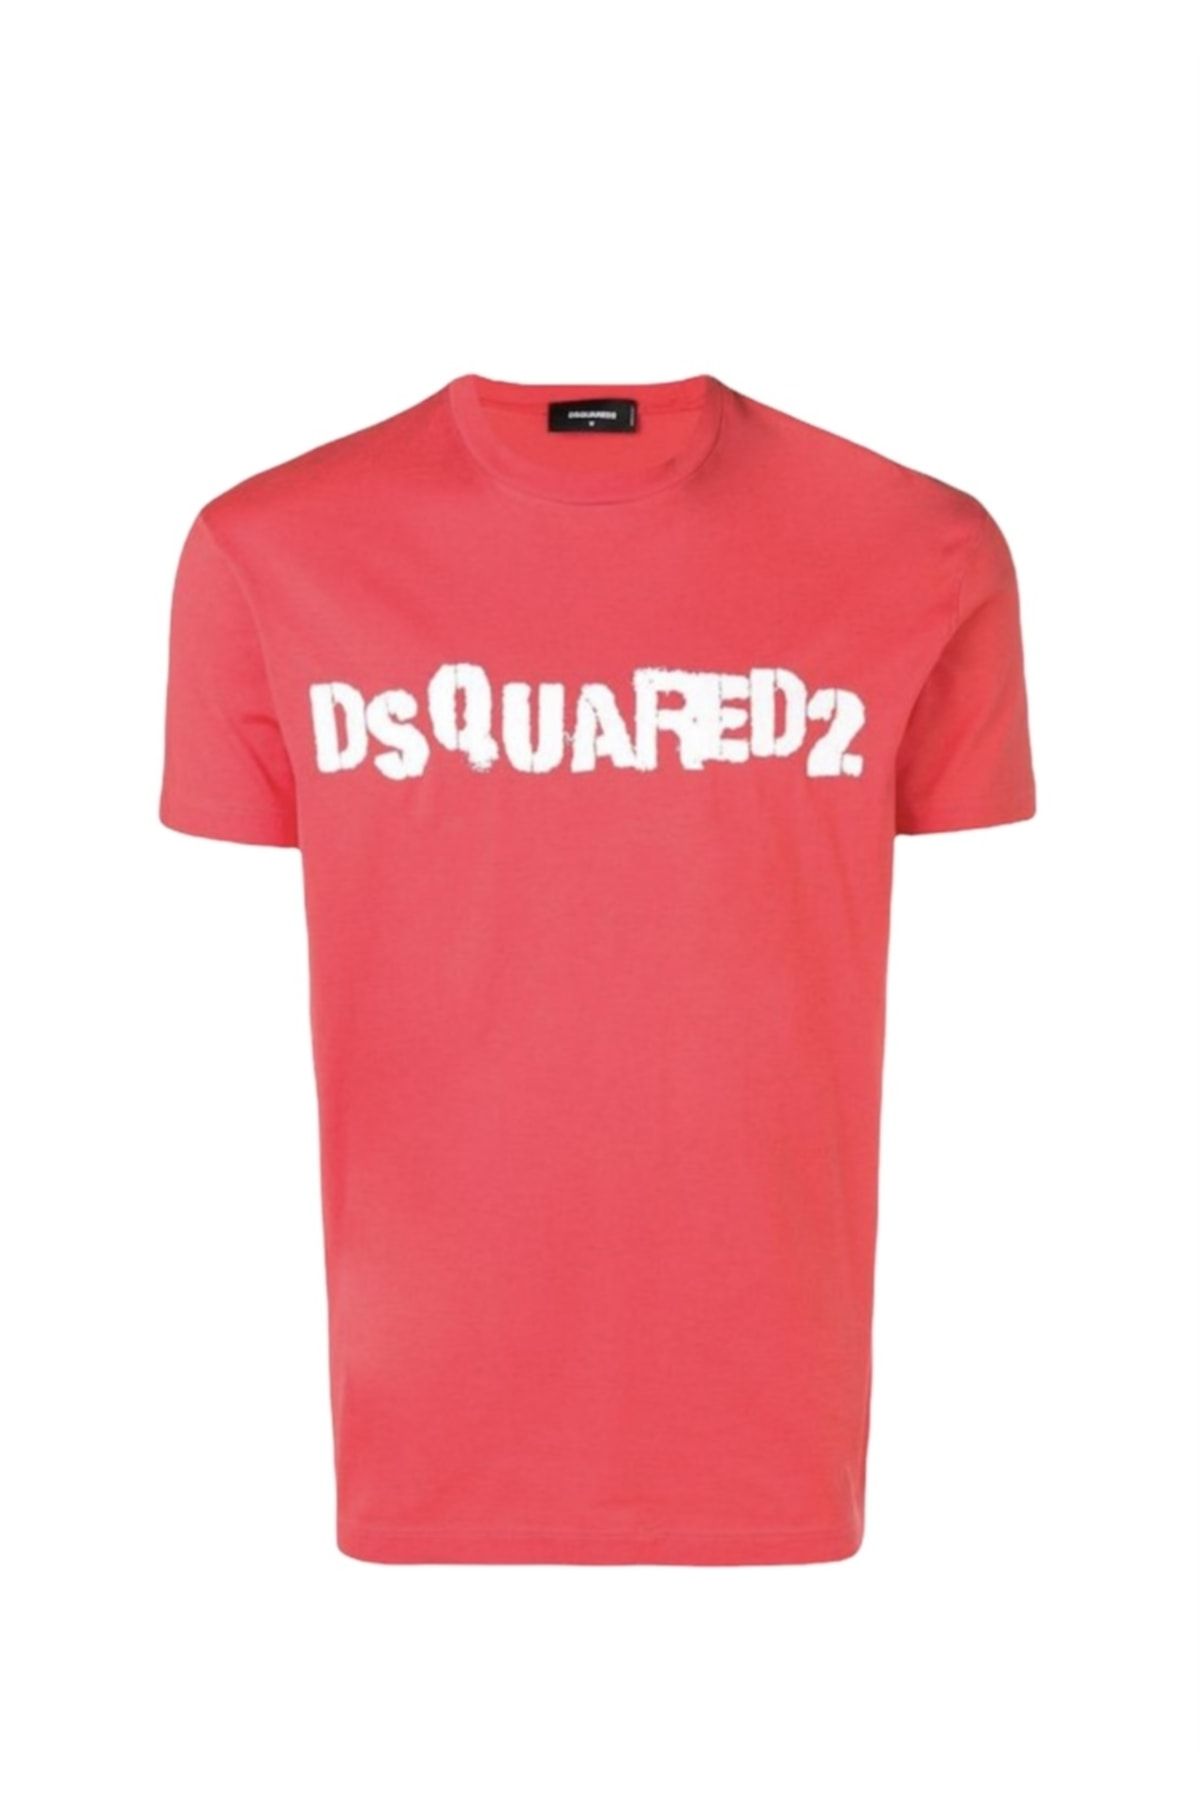 DSquared2 Reggello Outlet T-shirt